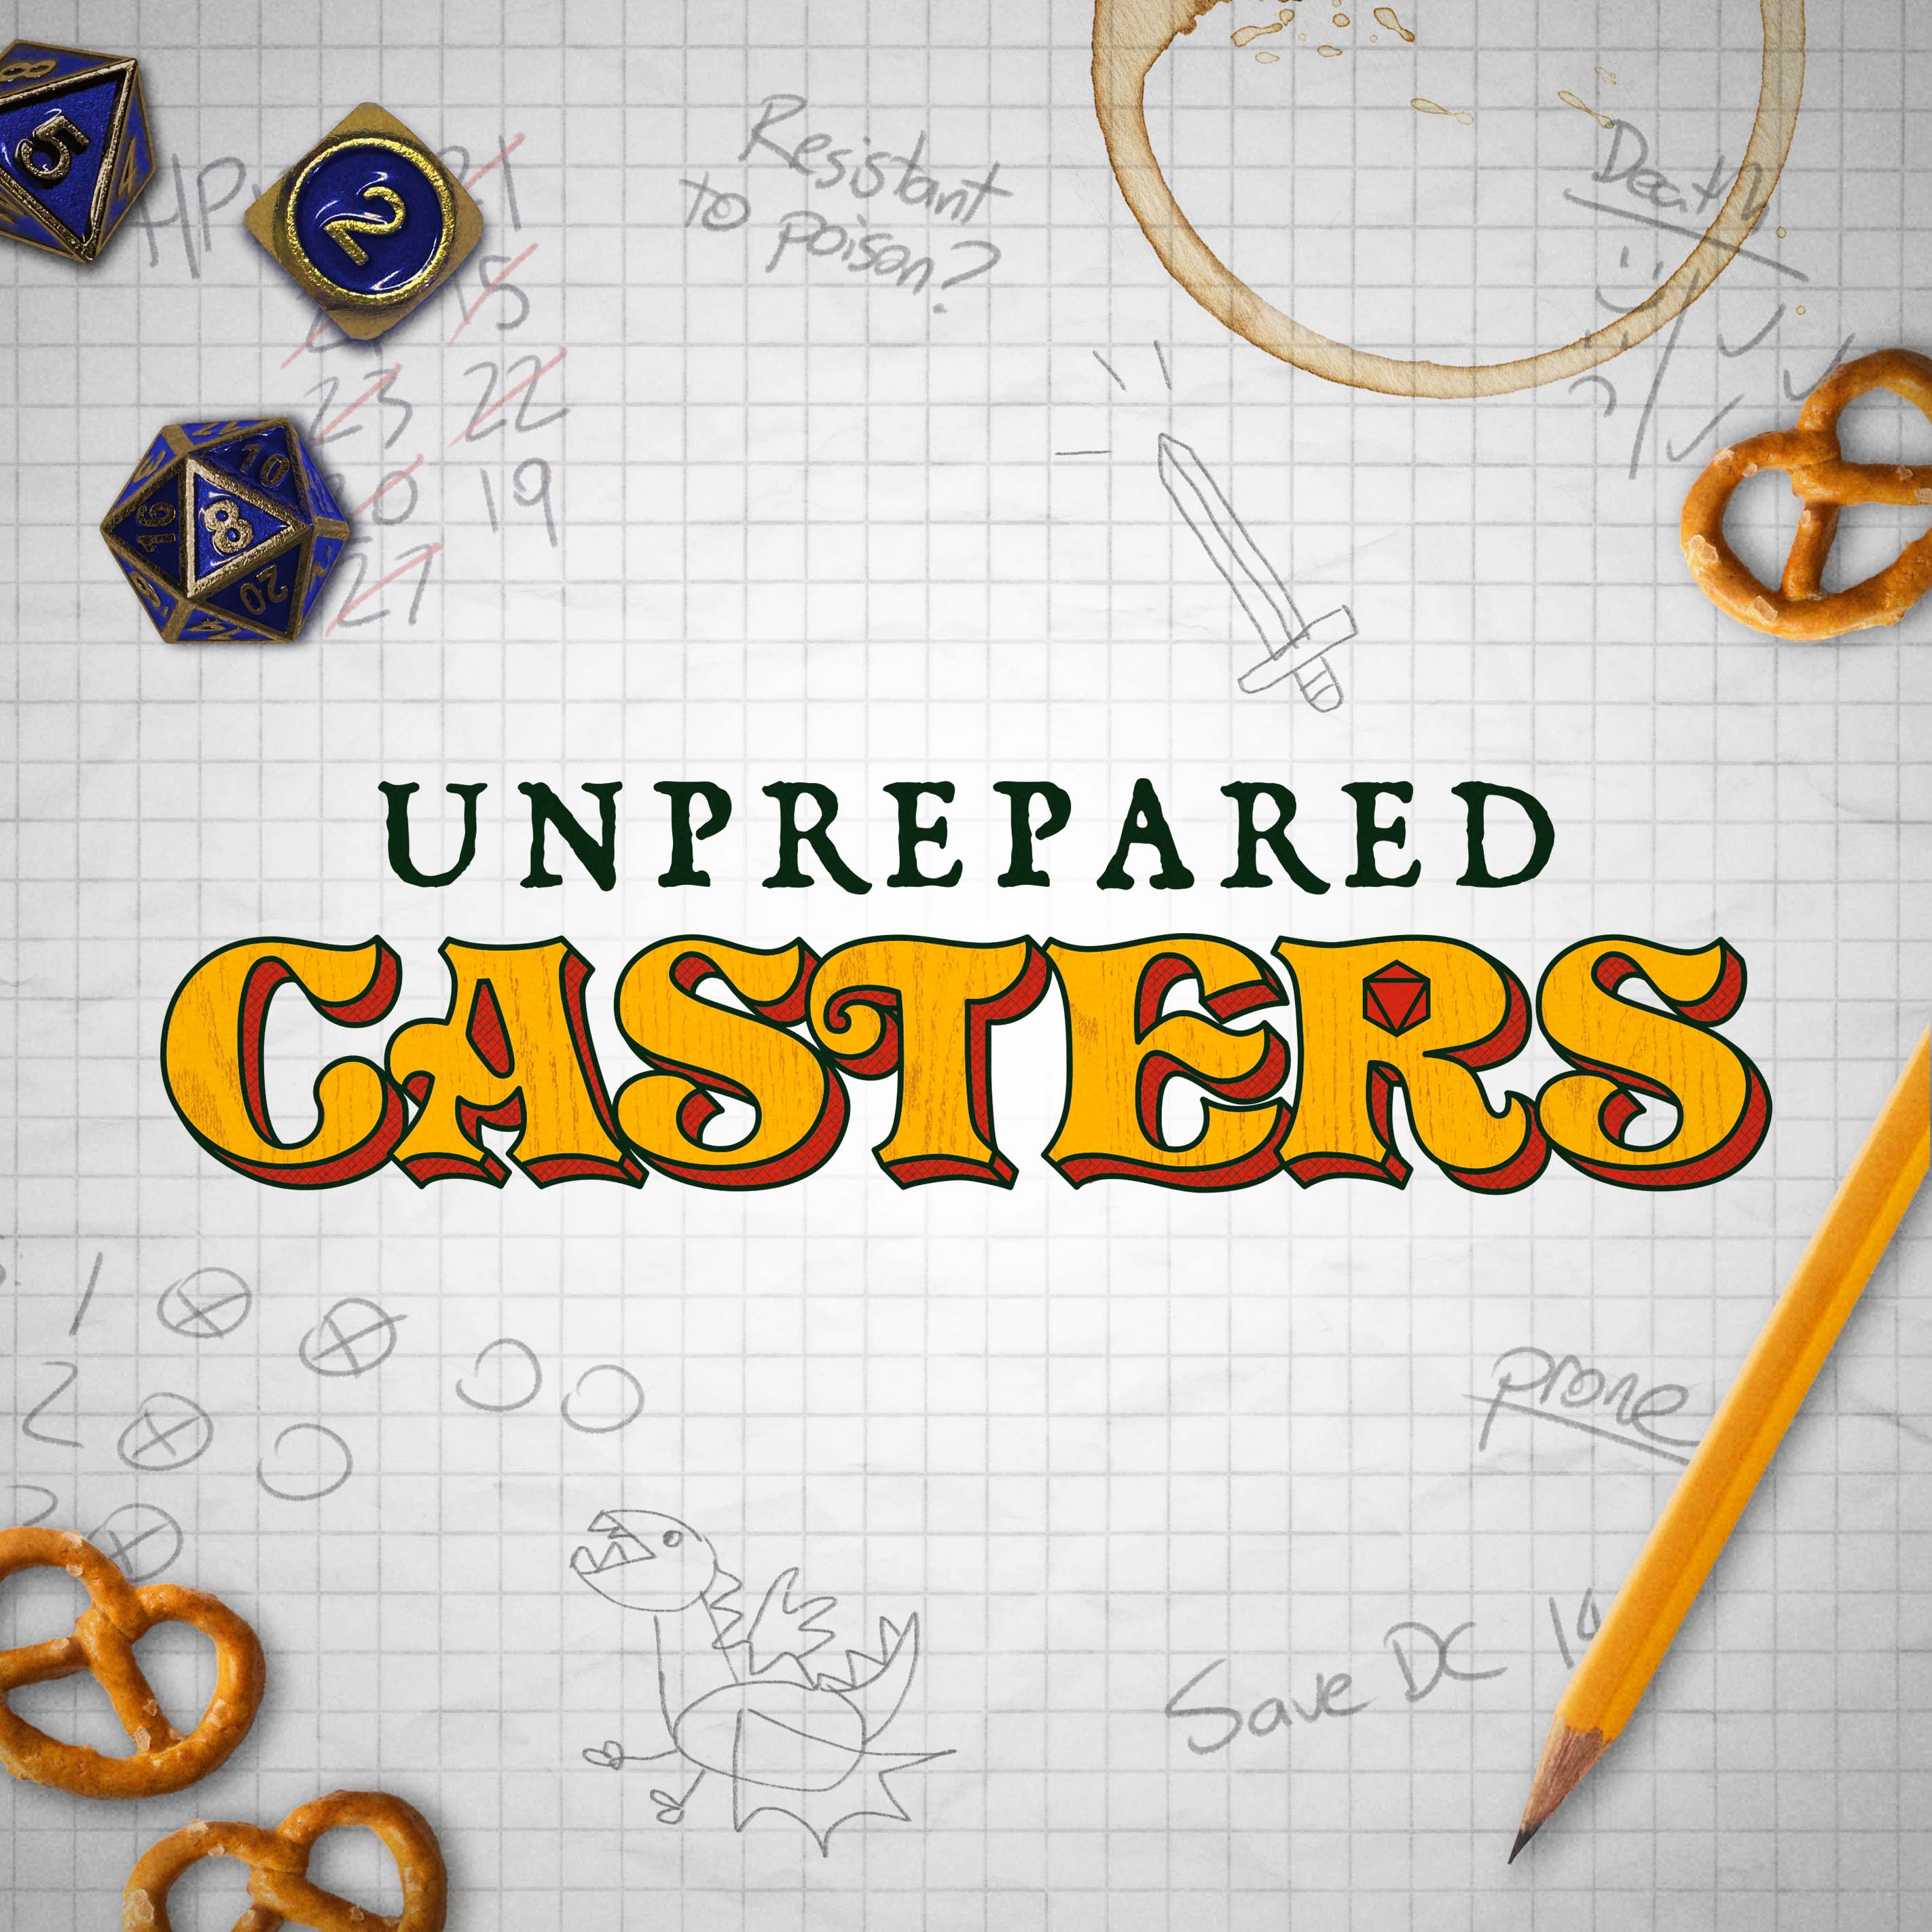 Unprepared Casters